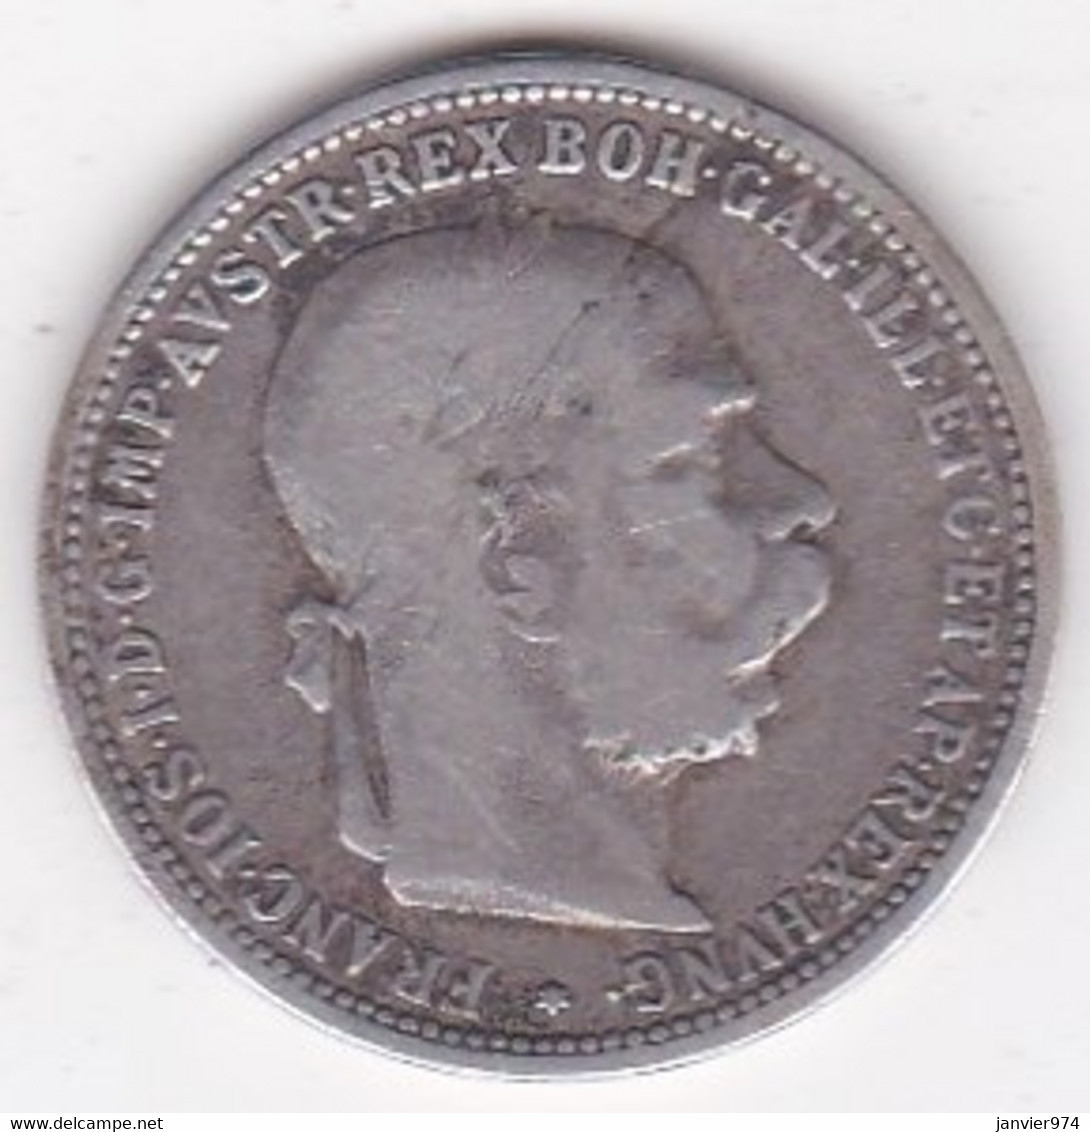 Autriche 1 Corona 1893 Franz Joseph I, En Argent, KM# 2804 - Autriche